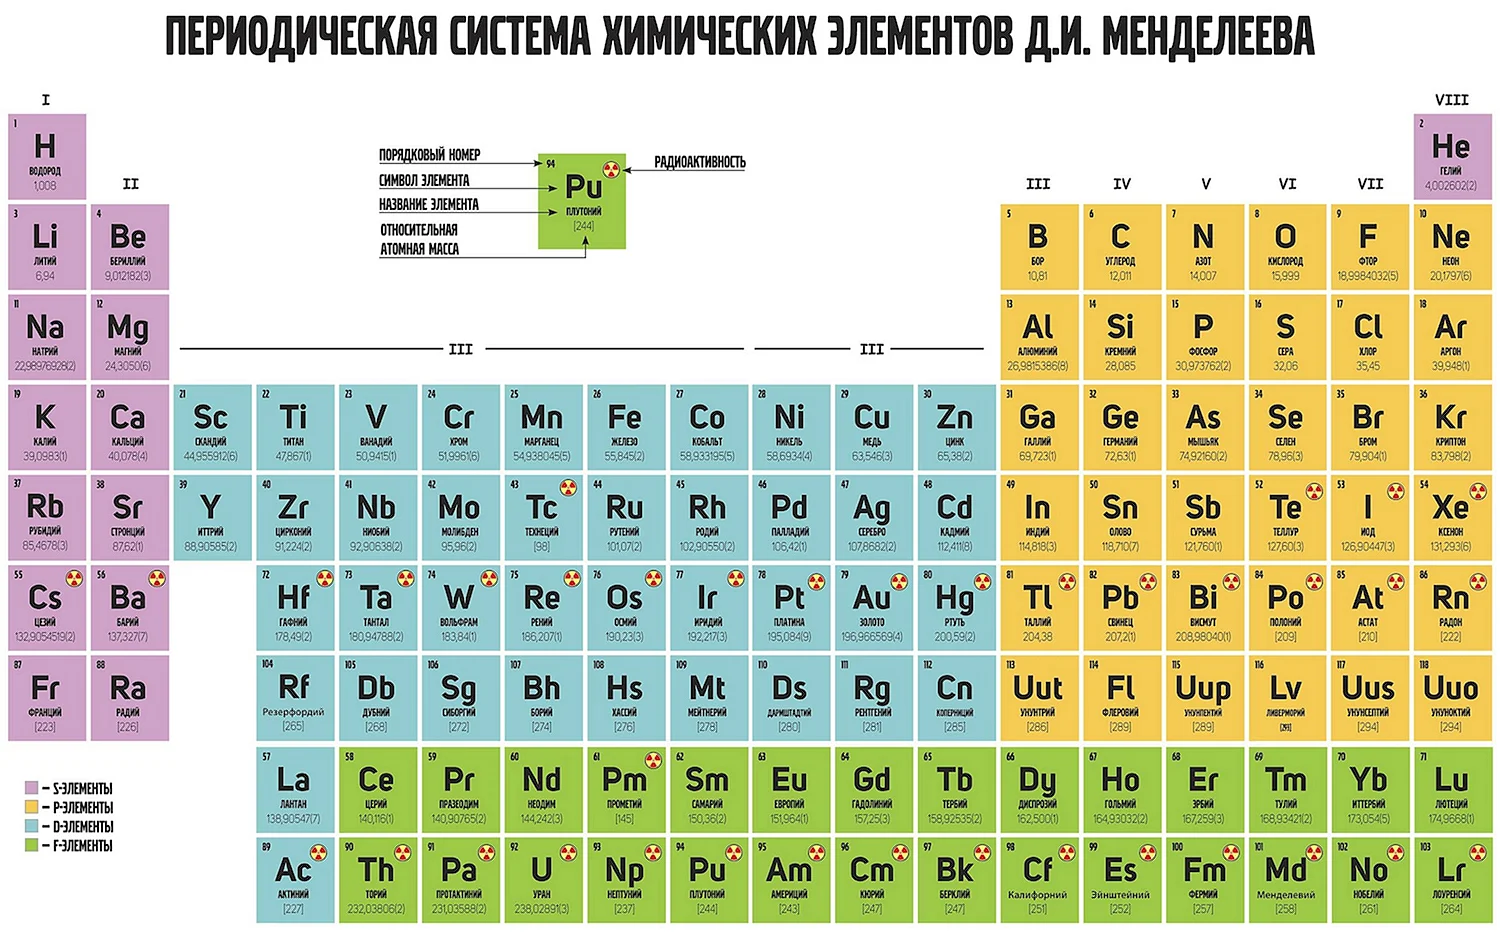 Периодическая система химических элементов д.и. Менделеева